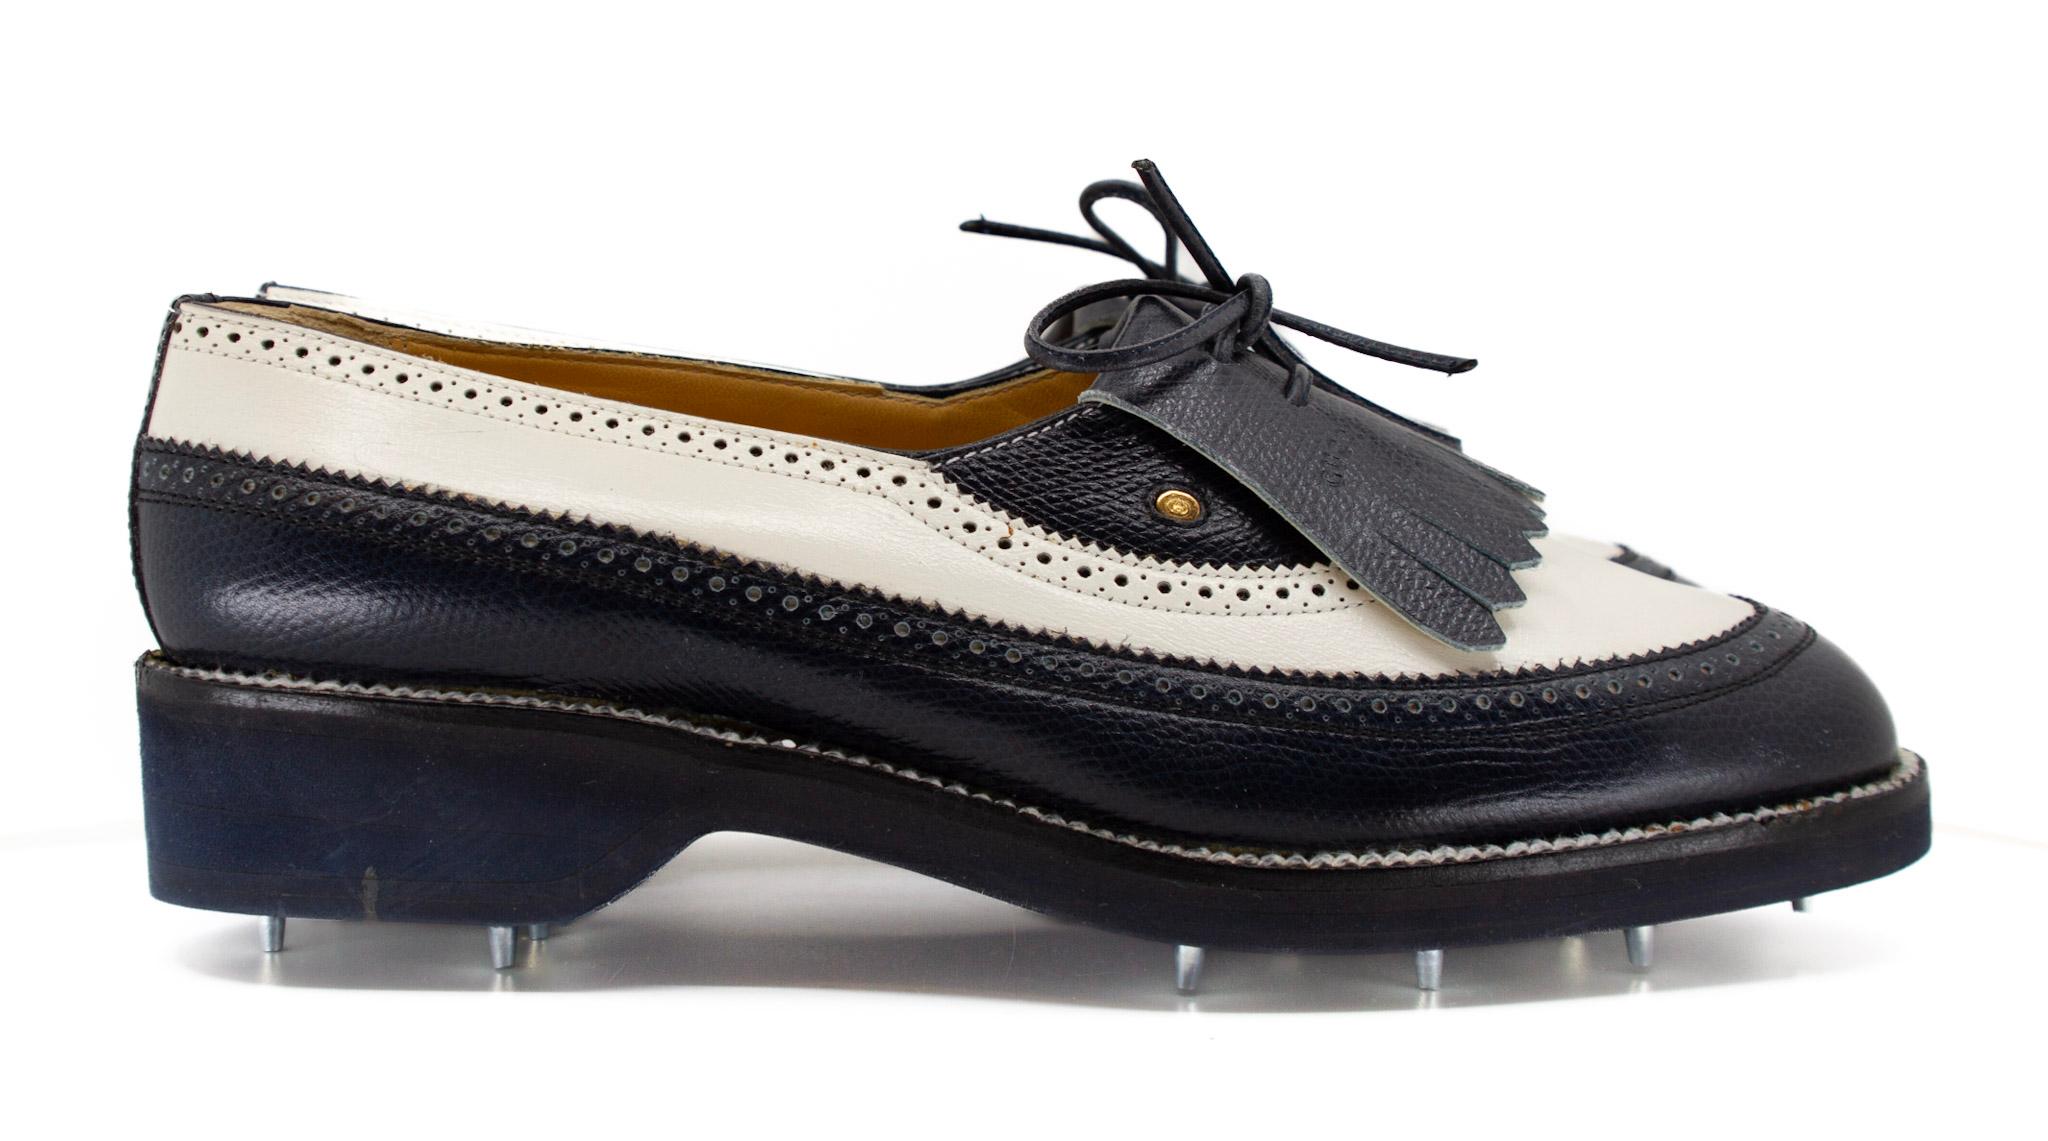 Chaussures de golf noir et blanc très Vintage Gucci avec crampons et embellissements métalliques Gucci. État impeccable.

EU 39B / US 8.5 Narrow 